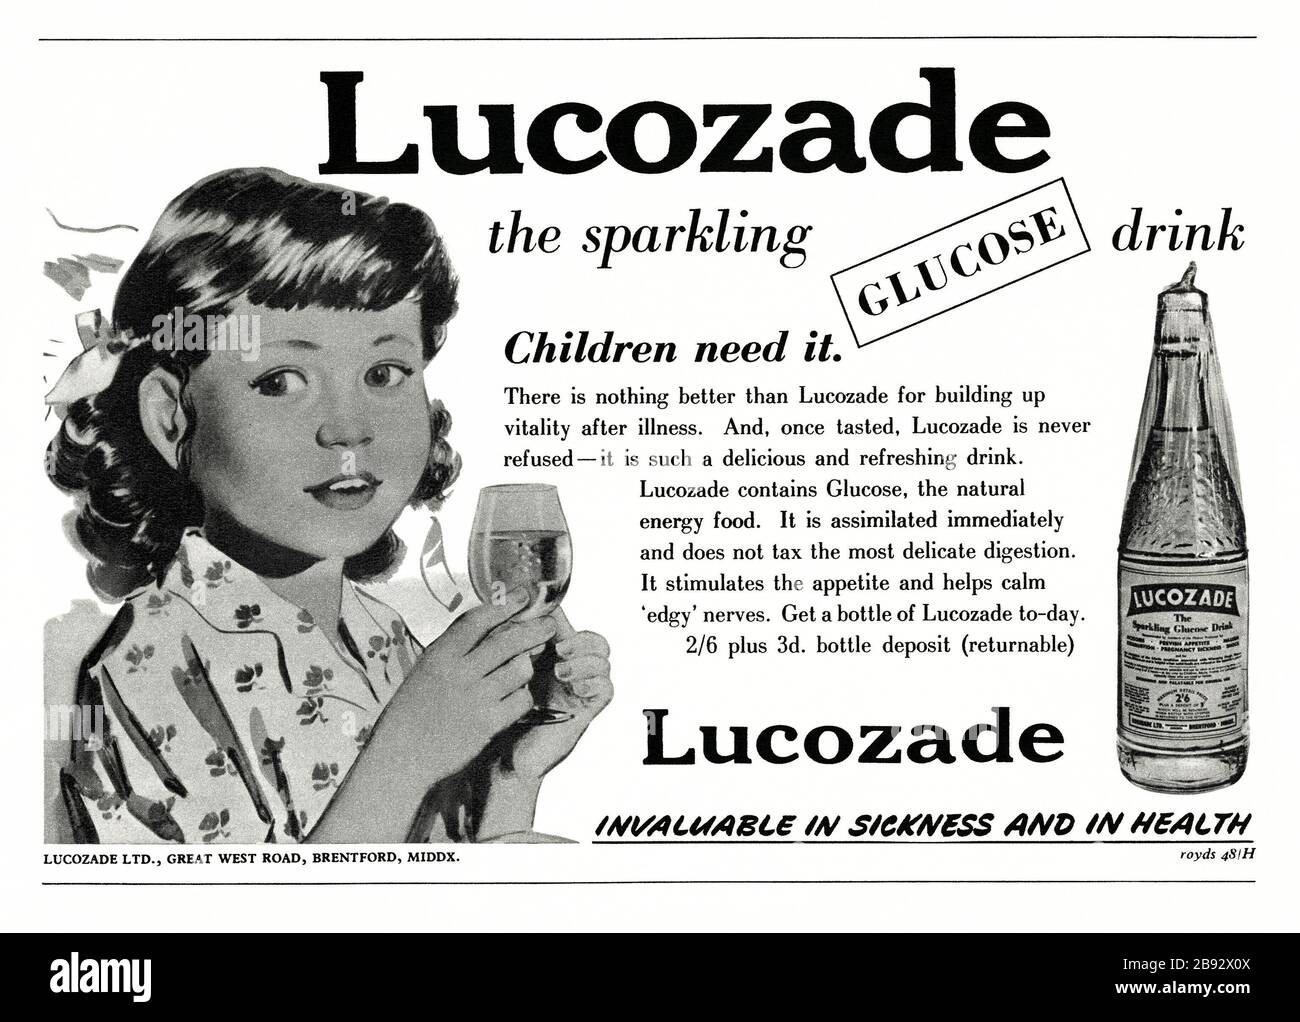 Un'inserzione degli anni '50 per Lucozade, un marchio di bibita energica. L'annuncio è apparso in una rivista pubblicata nel Regno Unito nel febbraio 1952. L'annuncio si rivolge alla salute dei bambini e mostra una bambina e la bottiglia di vetro con il caratteristico involucro di cellophane. Originariamente chiamata "Glucozade", la bevanda fu inventata da William Walker Hunter nel 1927. Il prodotto è stato acquistato dal Gruppo Beecham nel 1938 e ribattezzato Lucozade. Lucozade era disponibile originariamente in una varietà, che aveva un sapore di agrumi. Il suo famoso slogan "Lucozade Aids recovery" fu sostituito da "Lucozade replaces lost Energy" nel 1983. Foto Stock